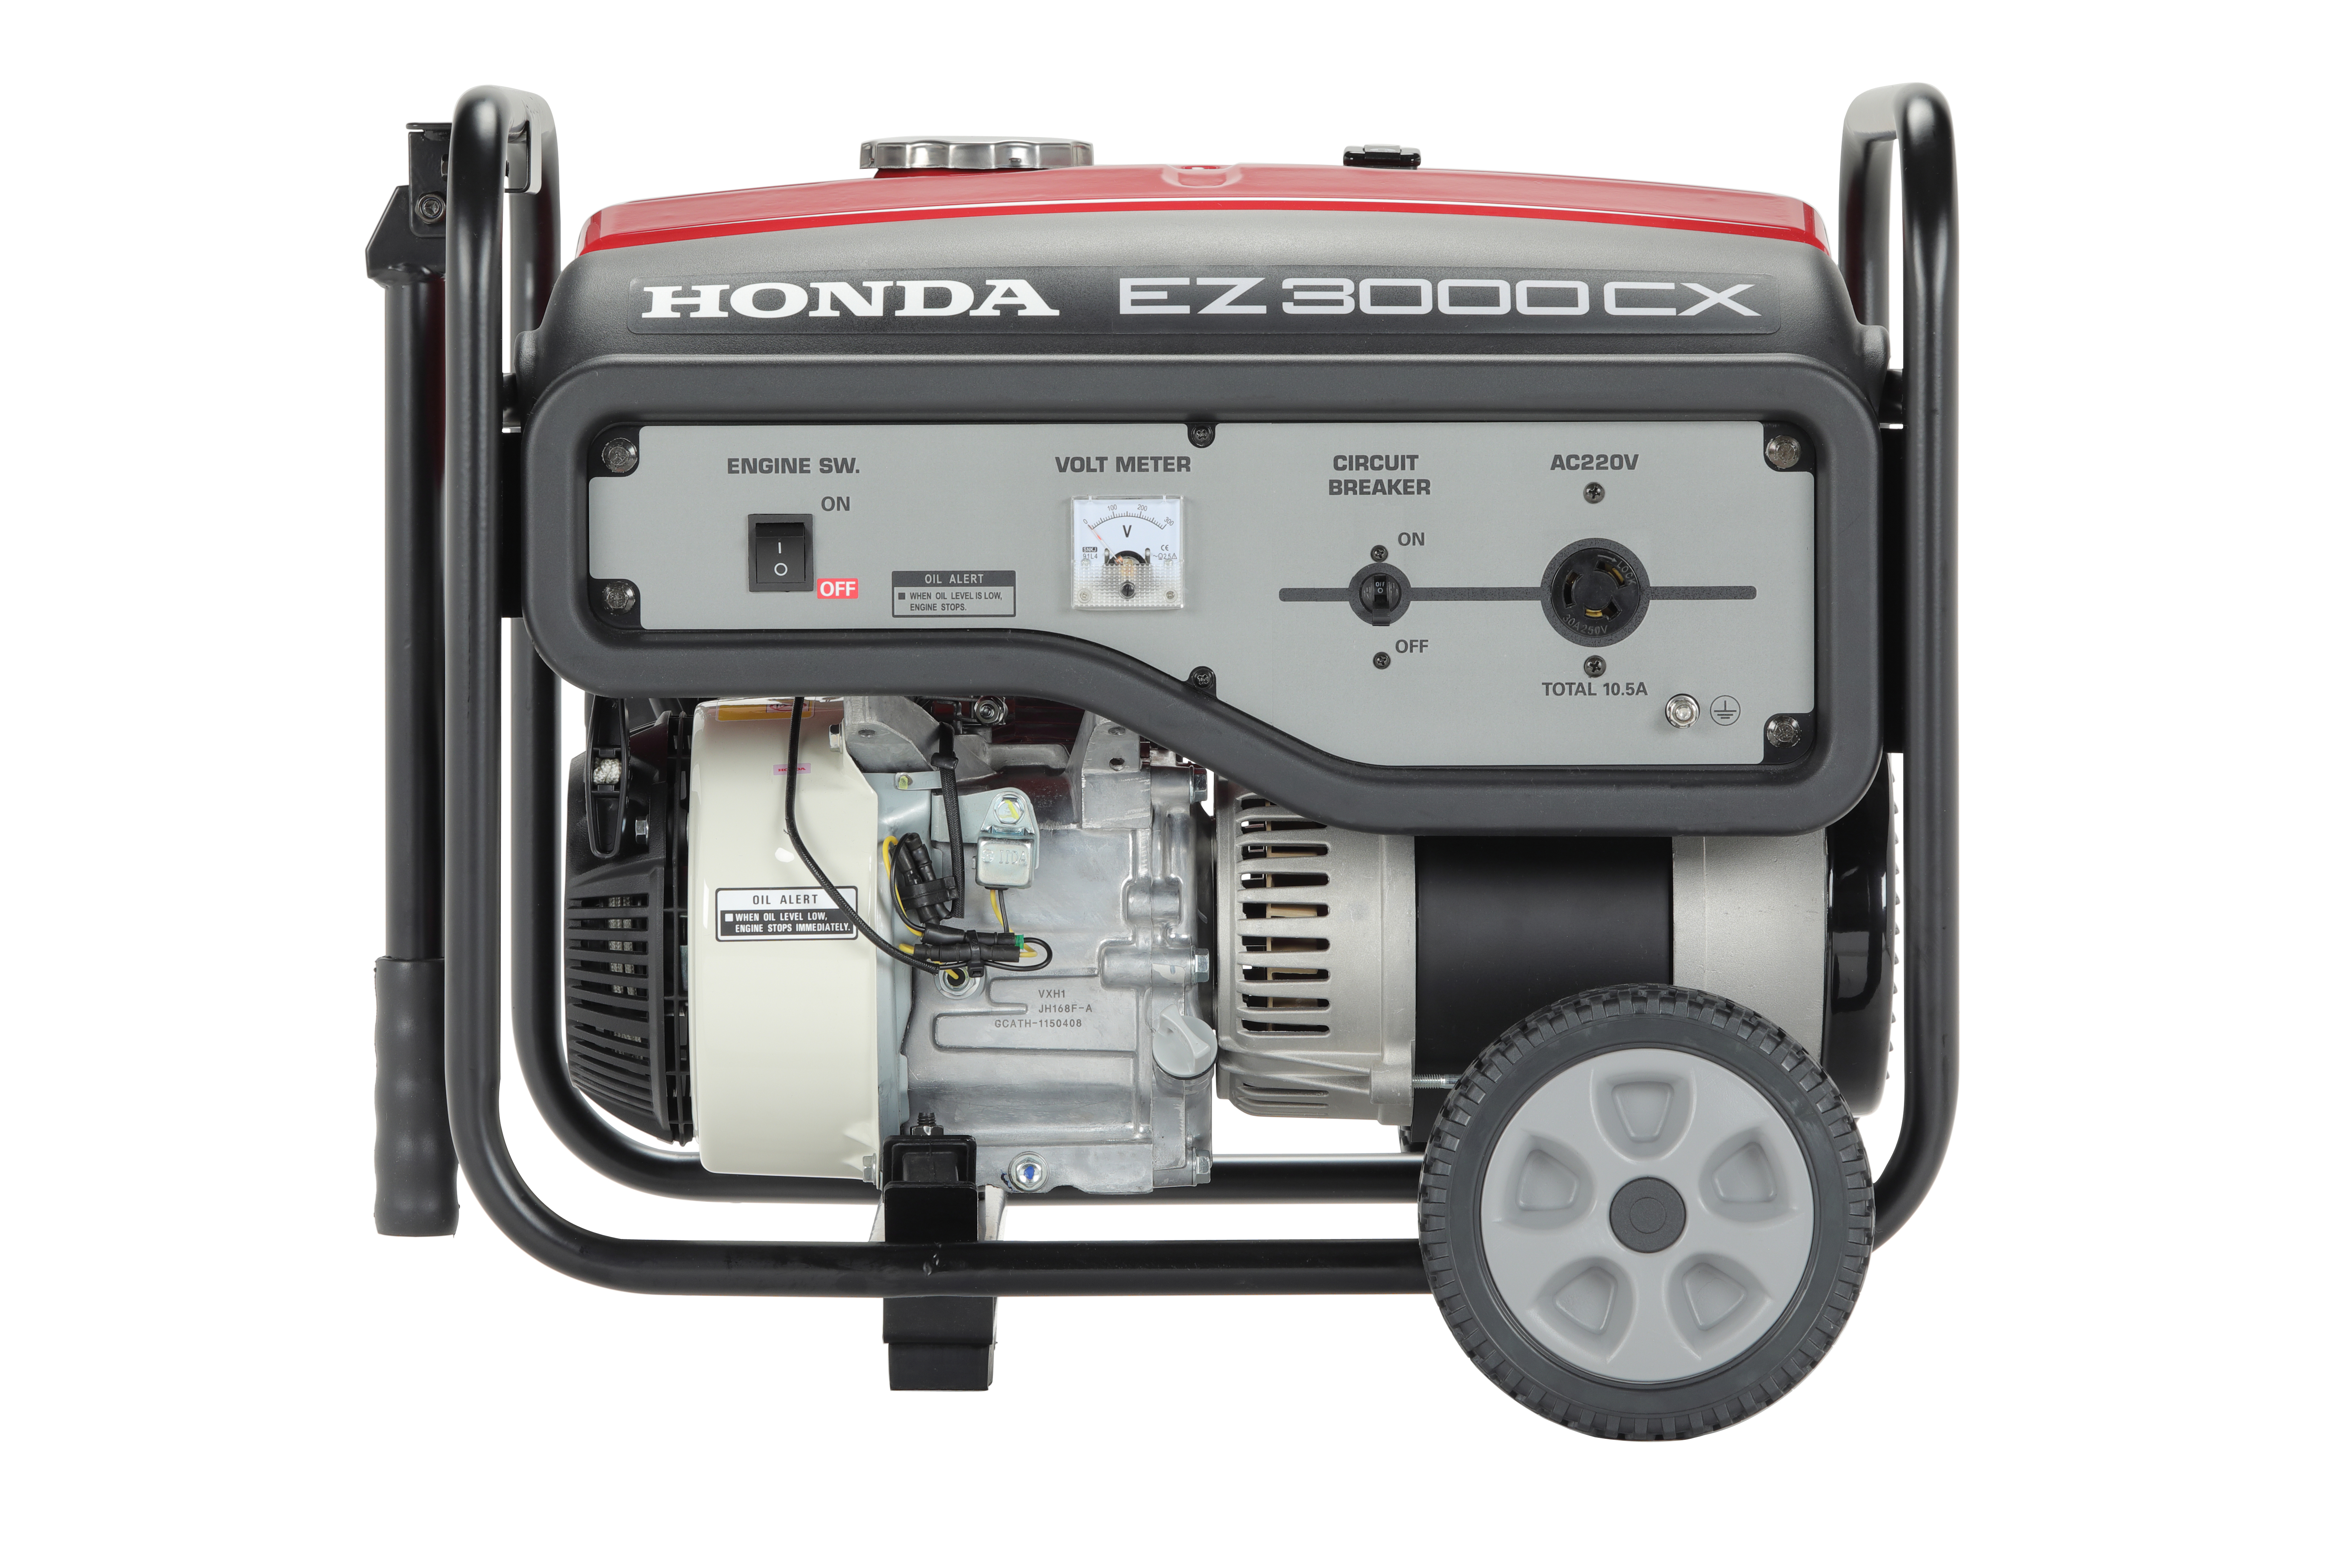 Generadores eléctricos Honda serie EG 